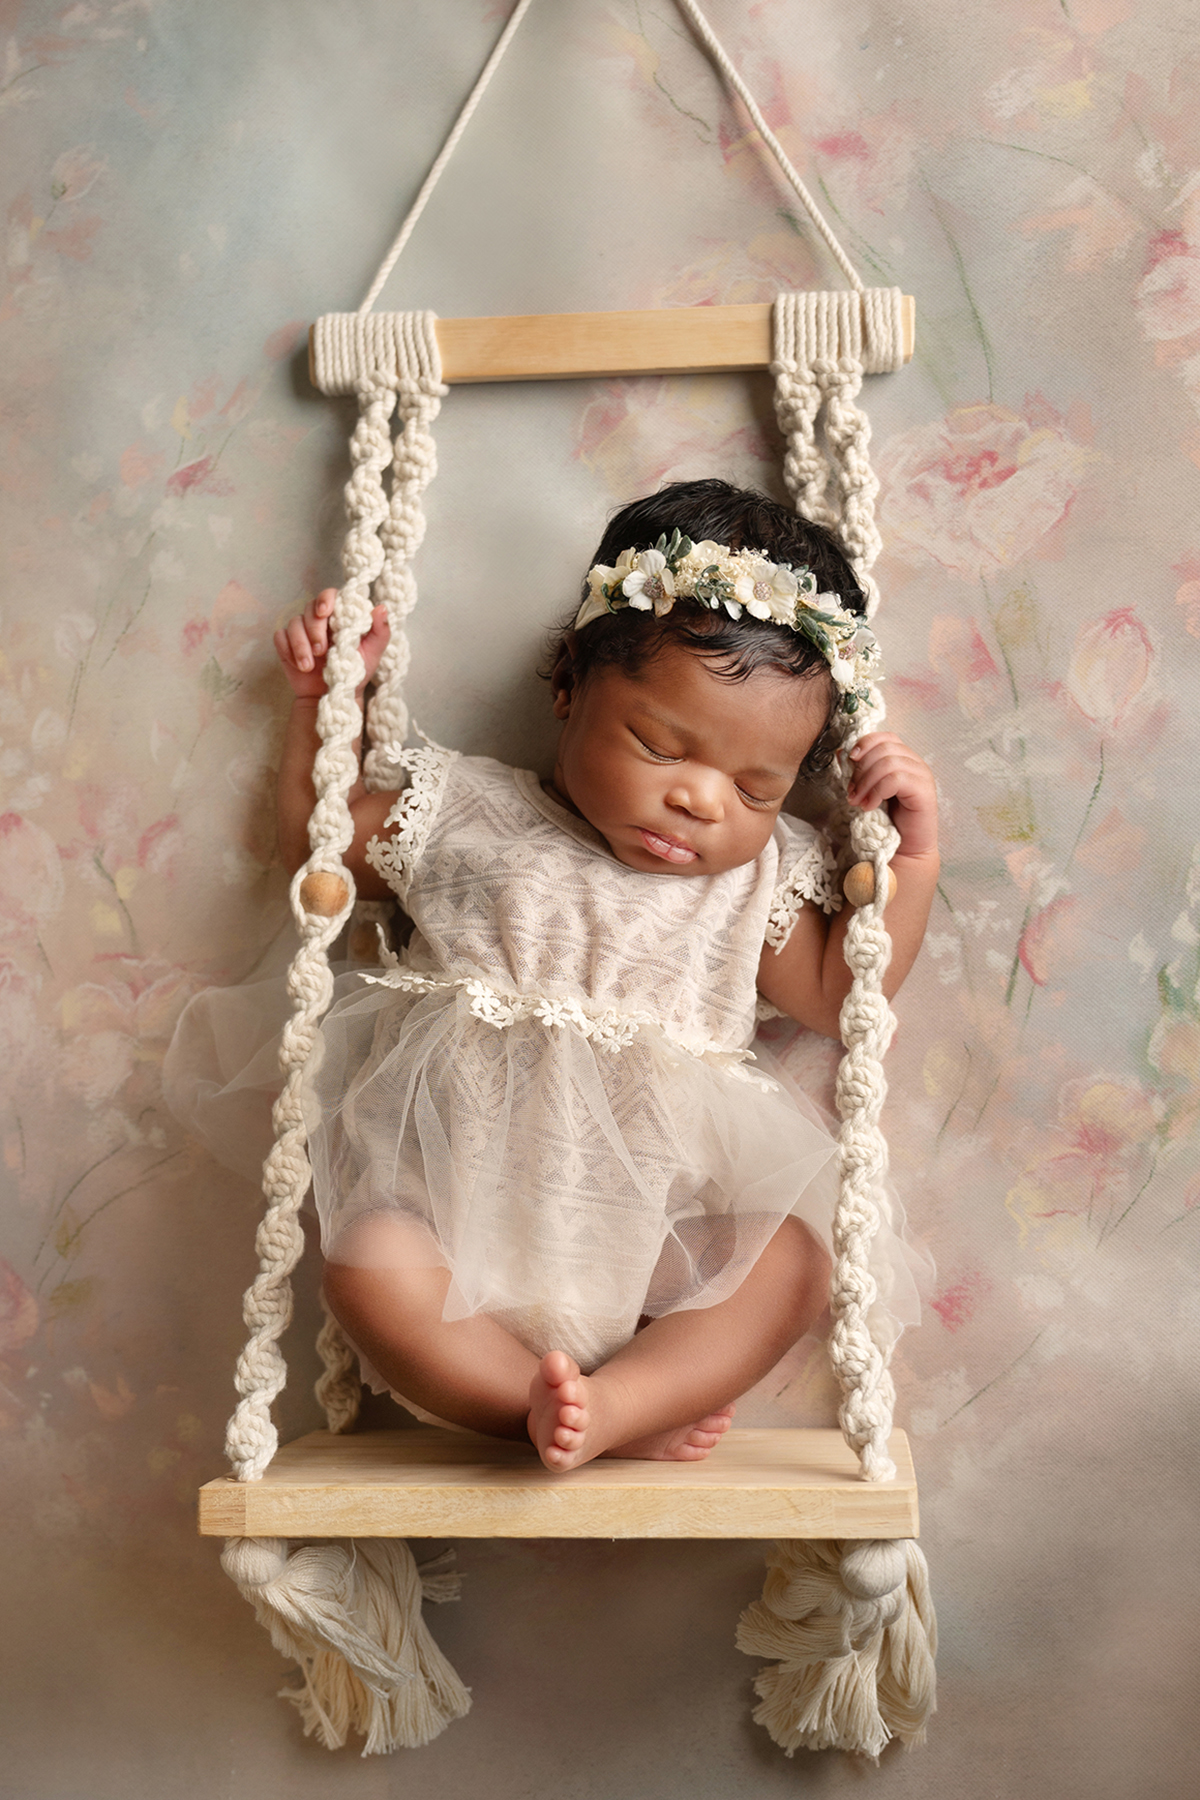 newborn portraits taken in-home in Aubrey, TX